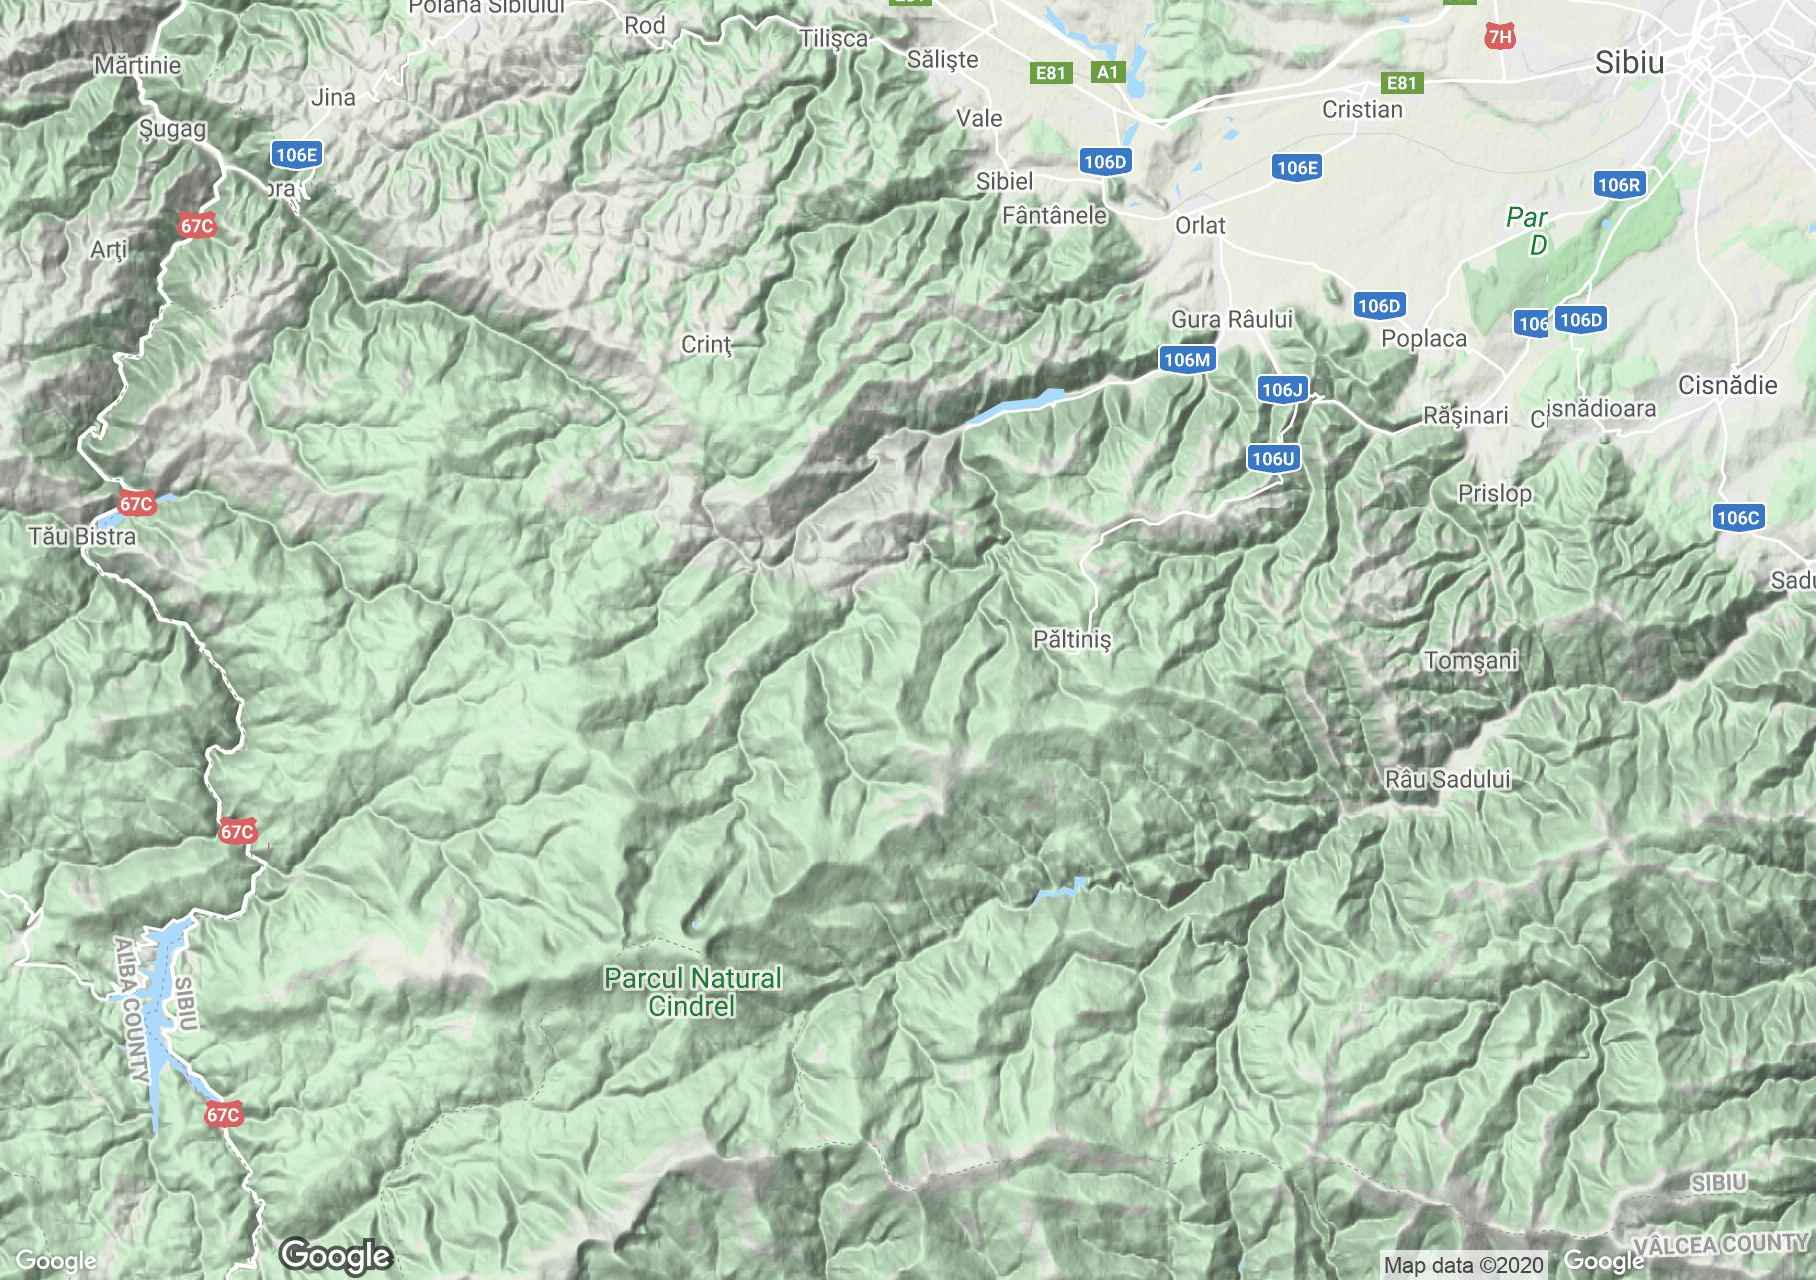 Szebeni-havasok interaktív turista térképe.